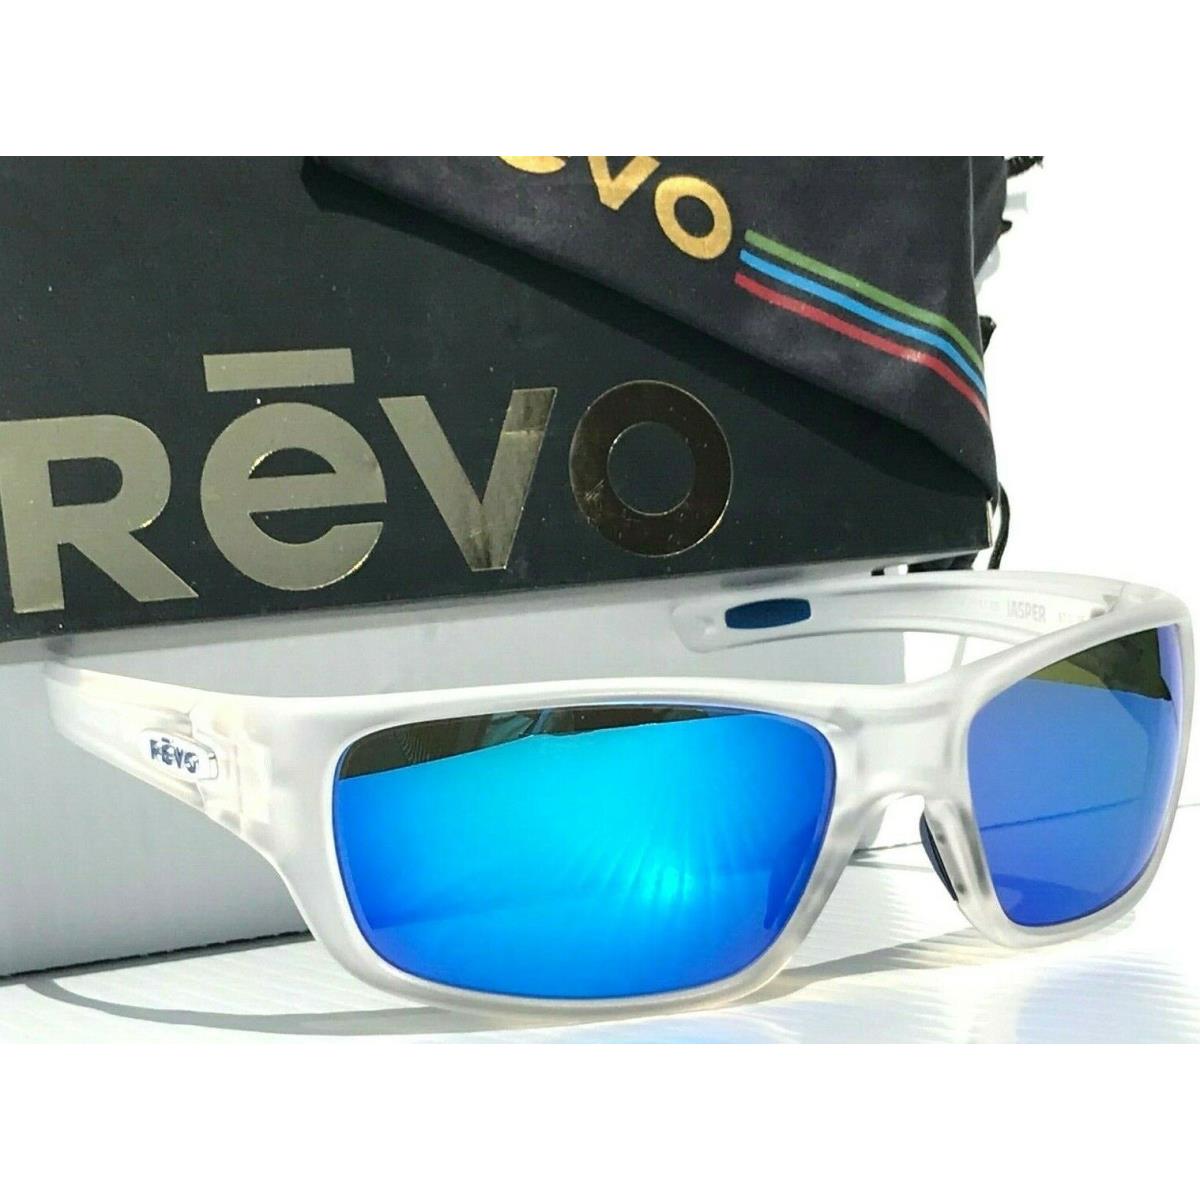 Revo sunglasses Jasper - Black Frame, Blue Lens